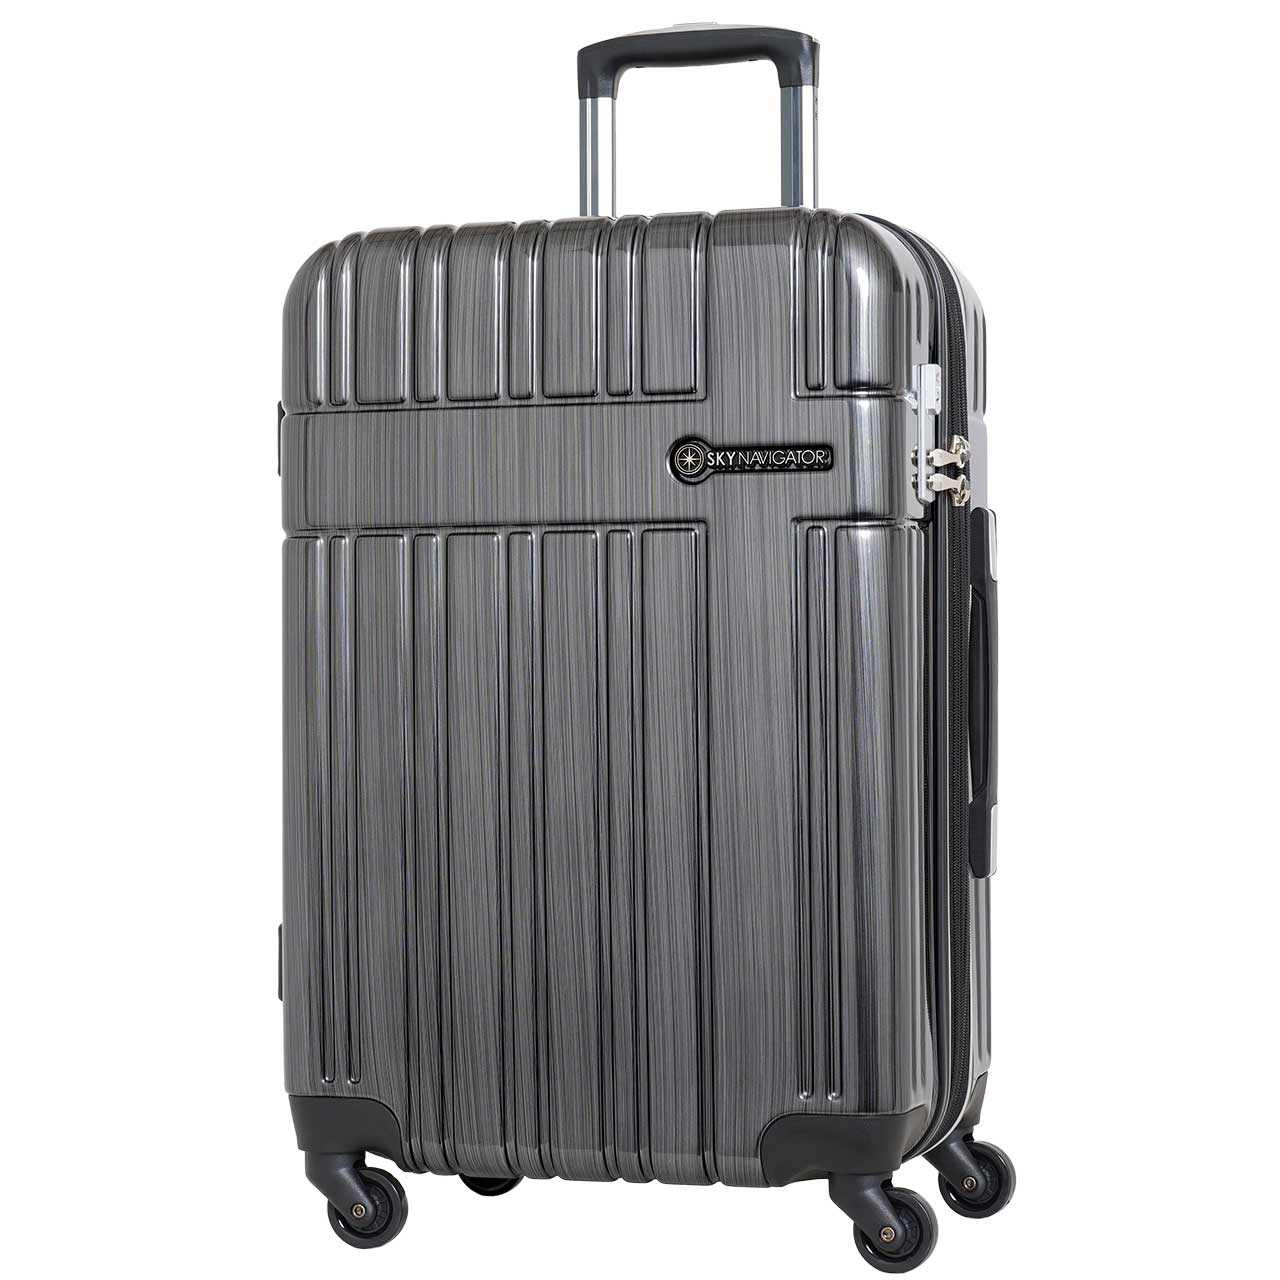 スーツケース M 4泊5日 キャリーケース 中型 おしゃれ 拡張 旅行 かわいい トラベル ビジネス スカイナビゲーター SK-0835-56